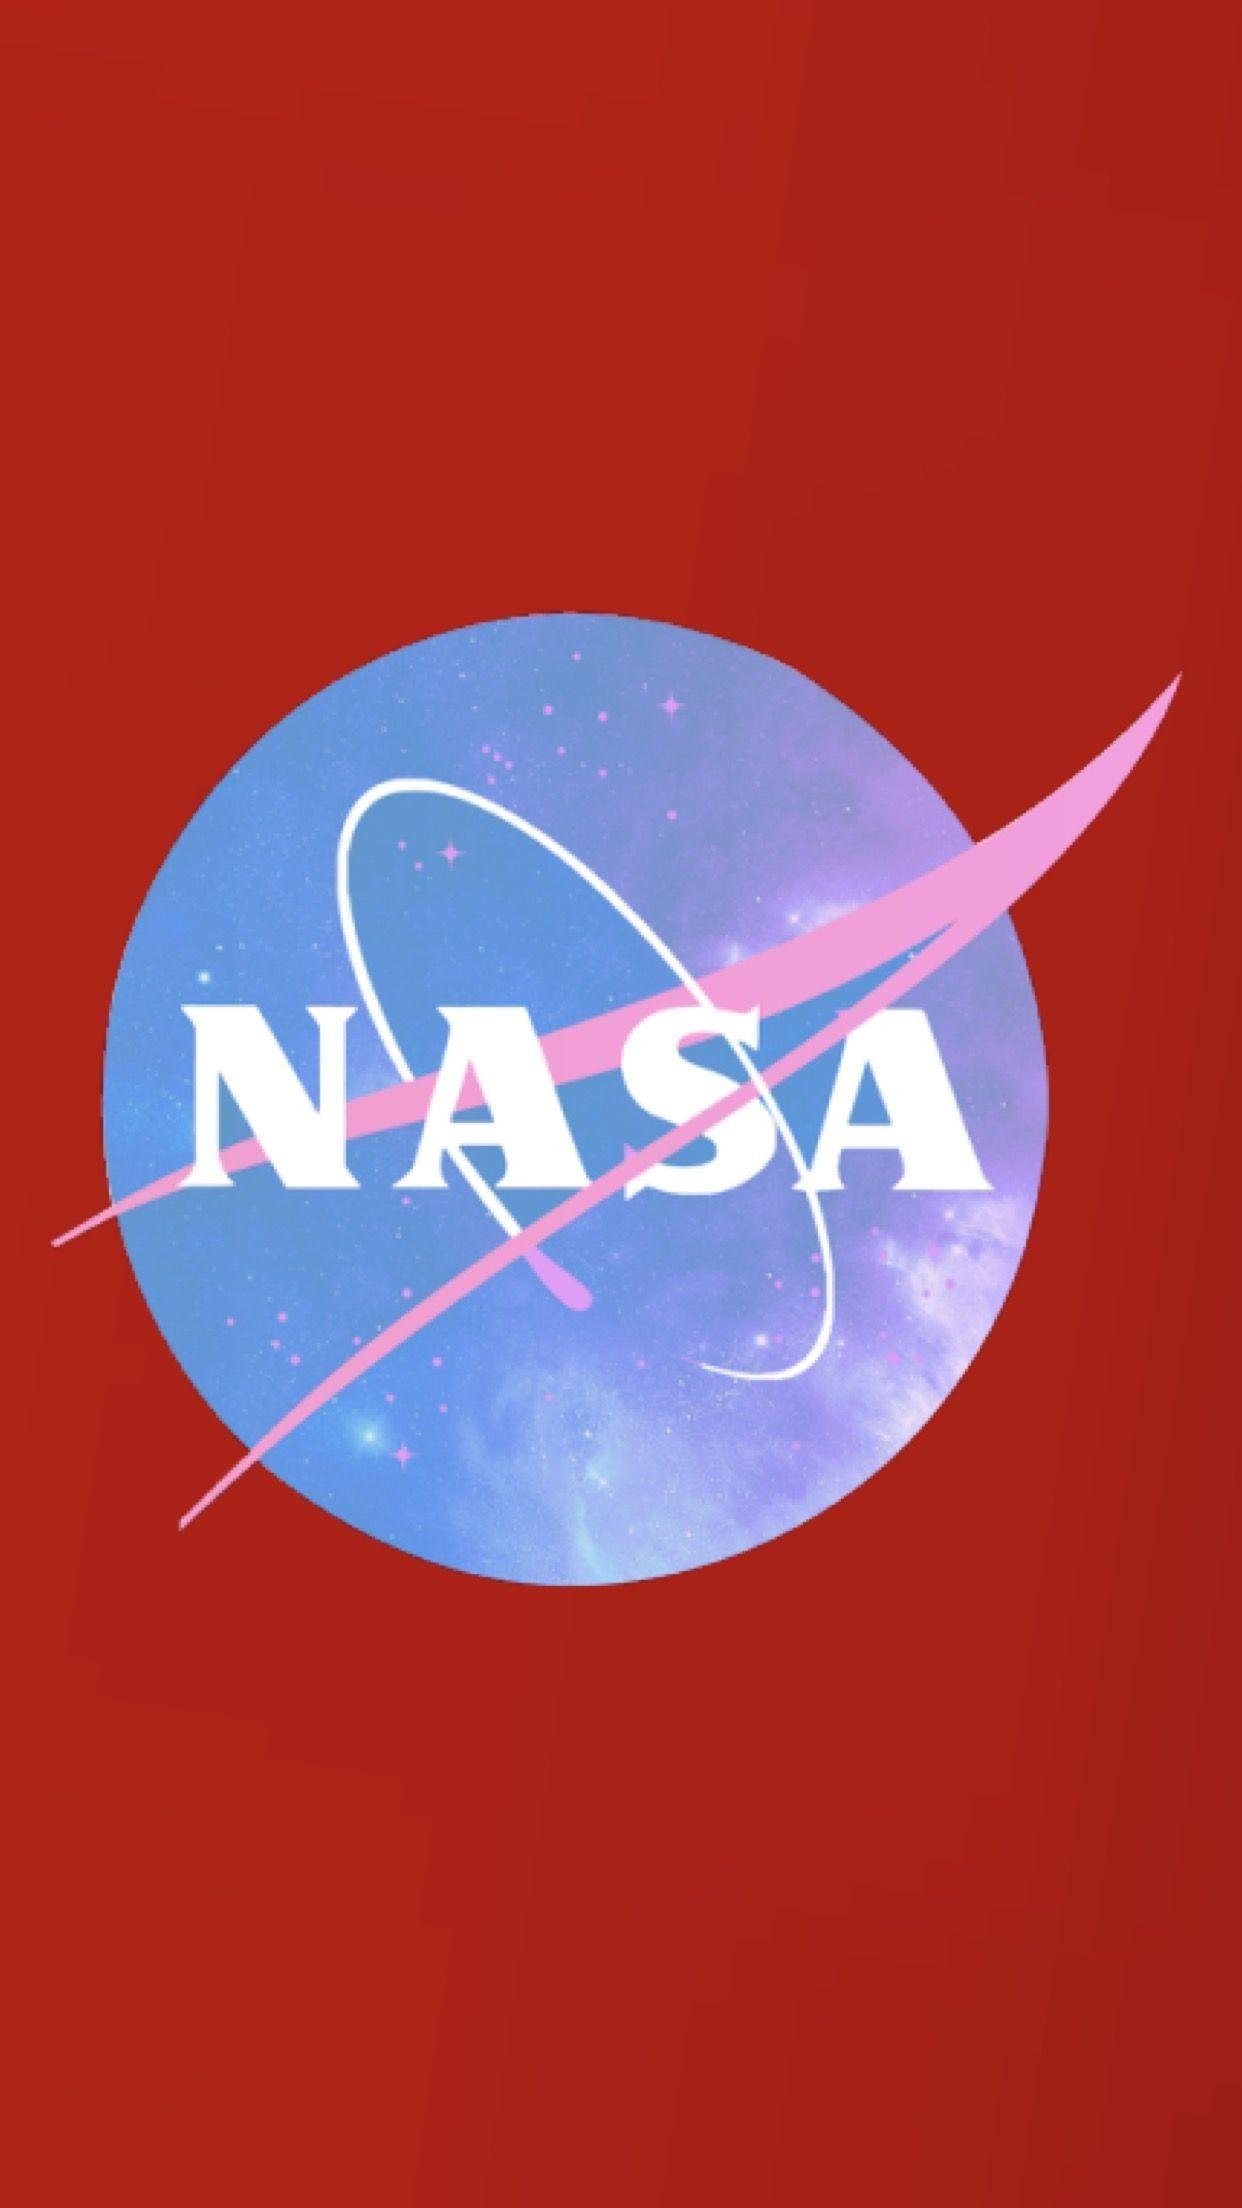 NASA Phone Wallpapers - Top Free NASA Phone Backgrounds - WallpaperAccess